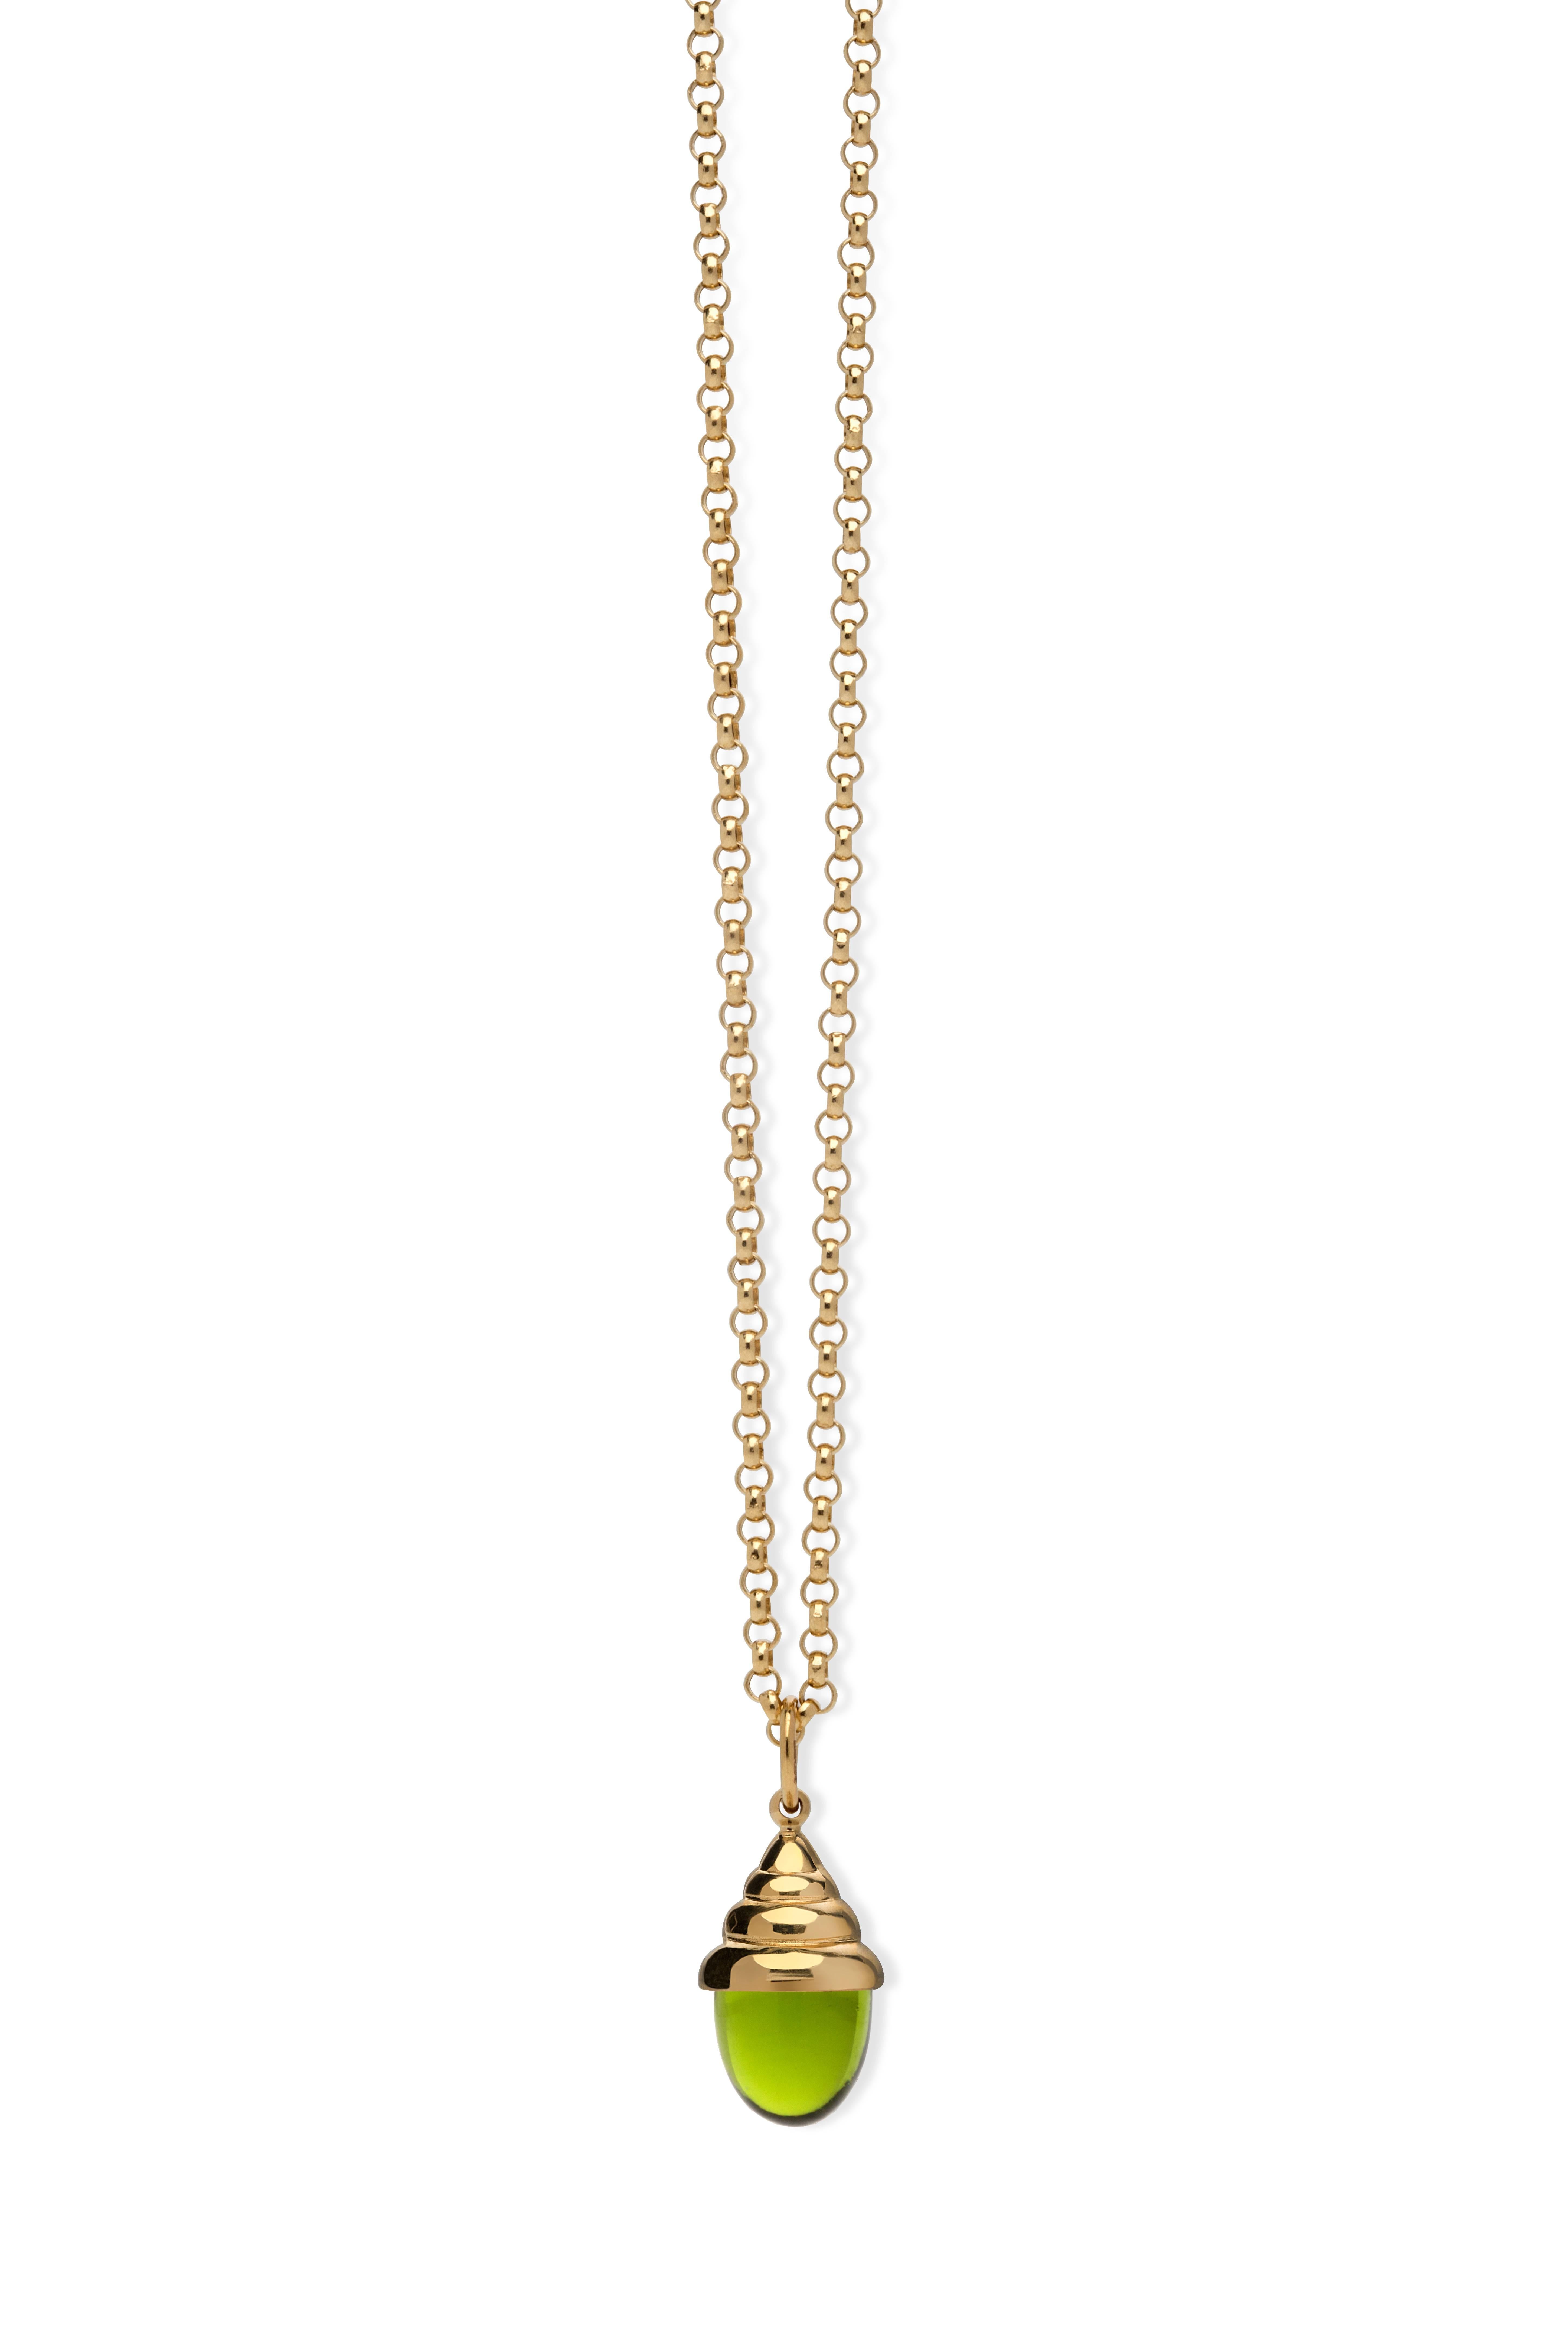 Pink Tourmaline Classic Quartz 18 Karat Yellow Solid Gold Drop Pendant Necklace For Sale 2